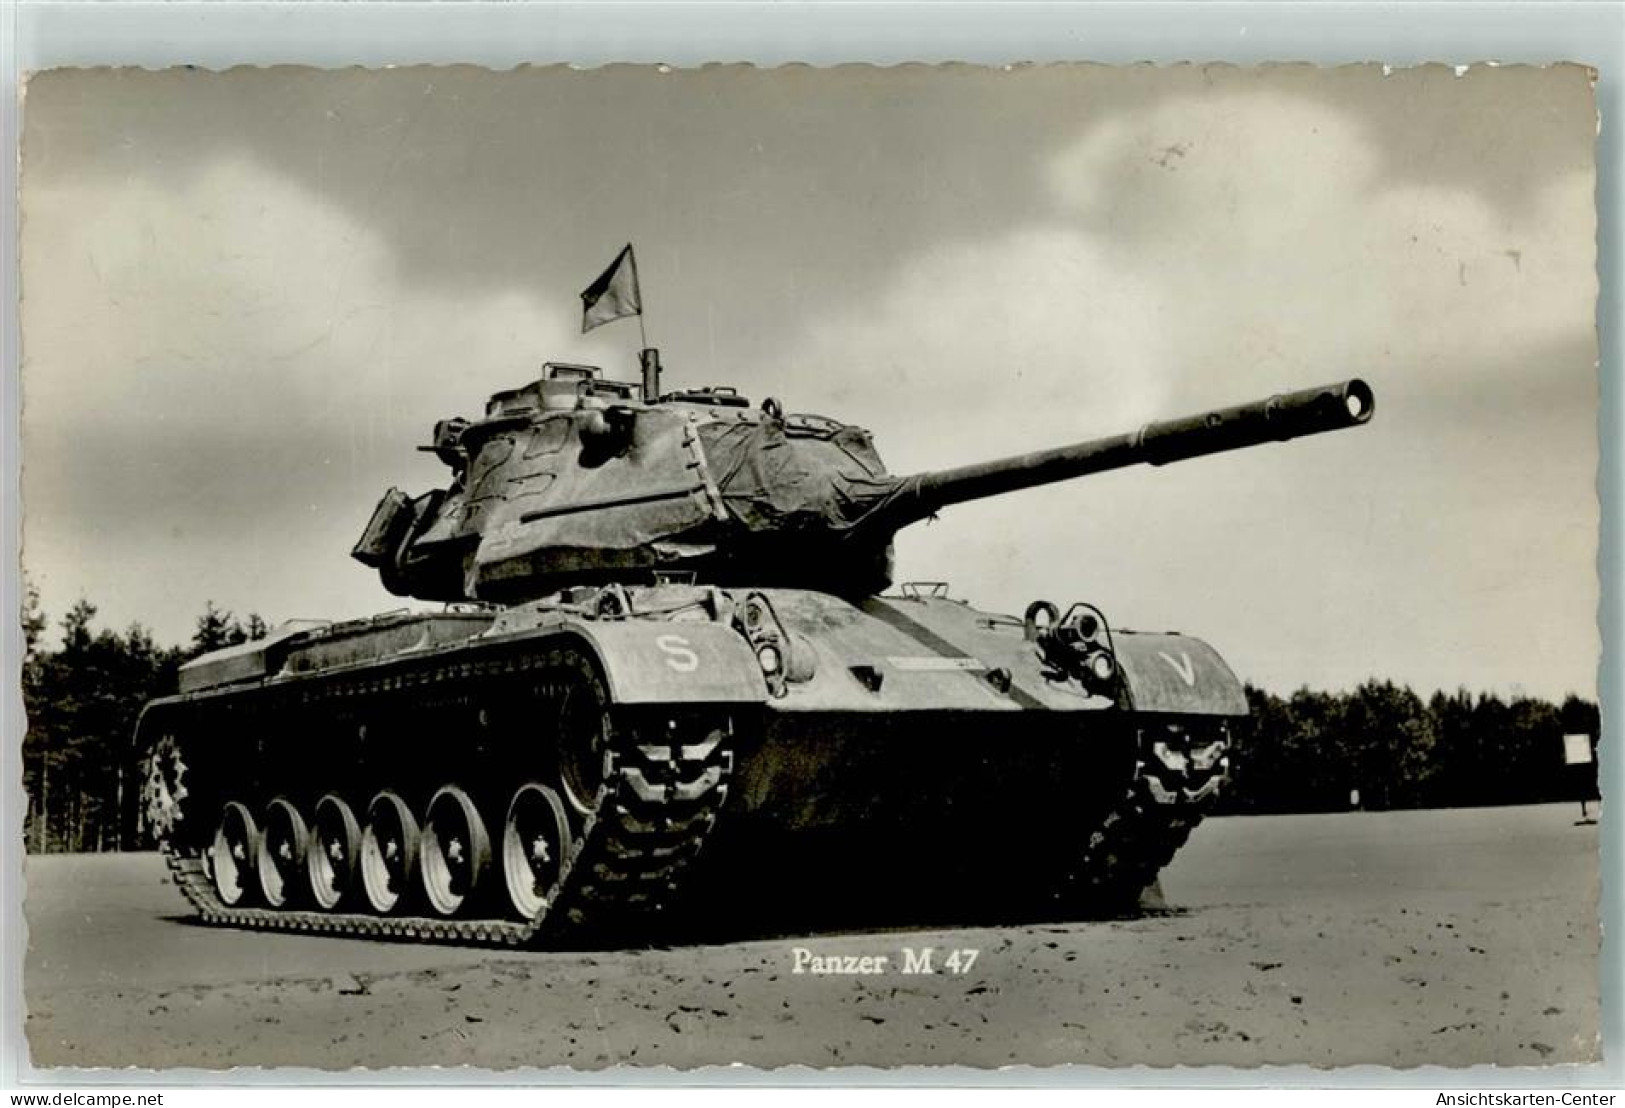 39271701 - Unsere Bundeswehr Panzer M 47 - Equipment